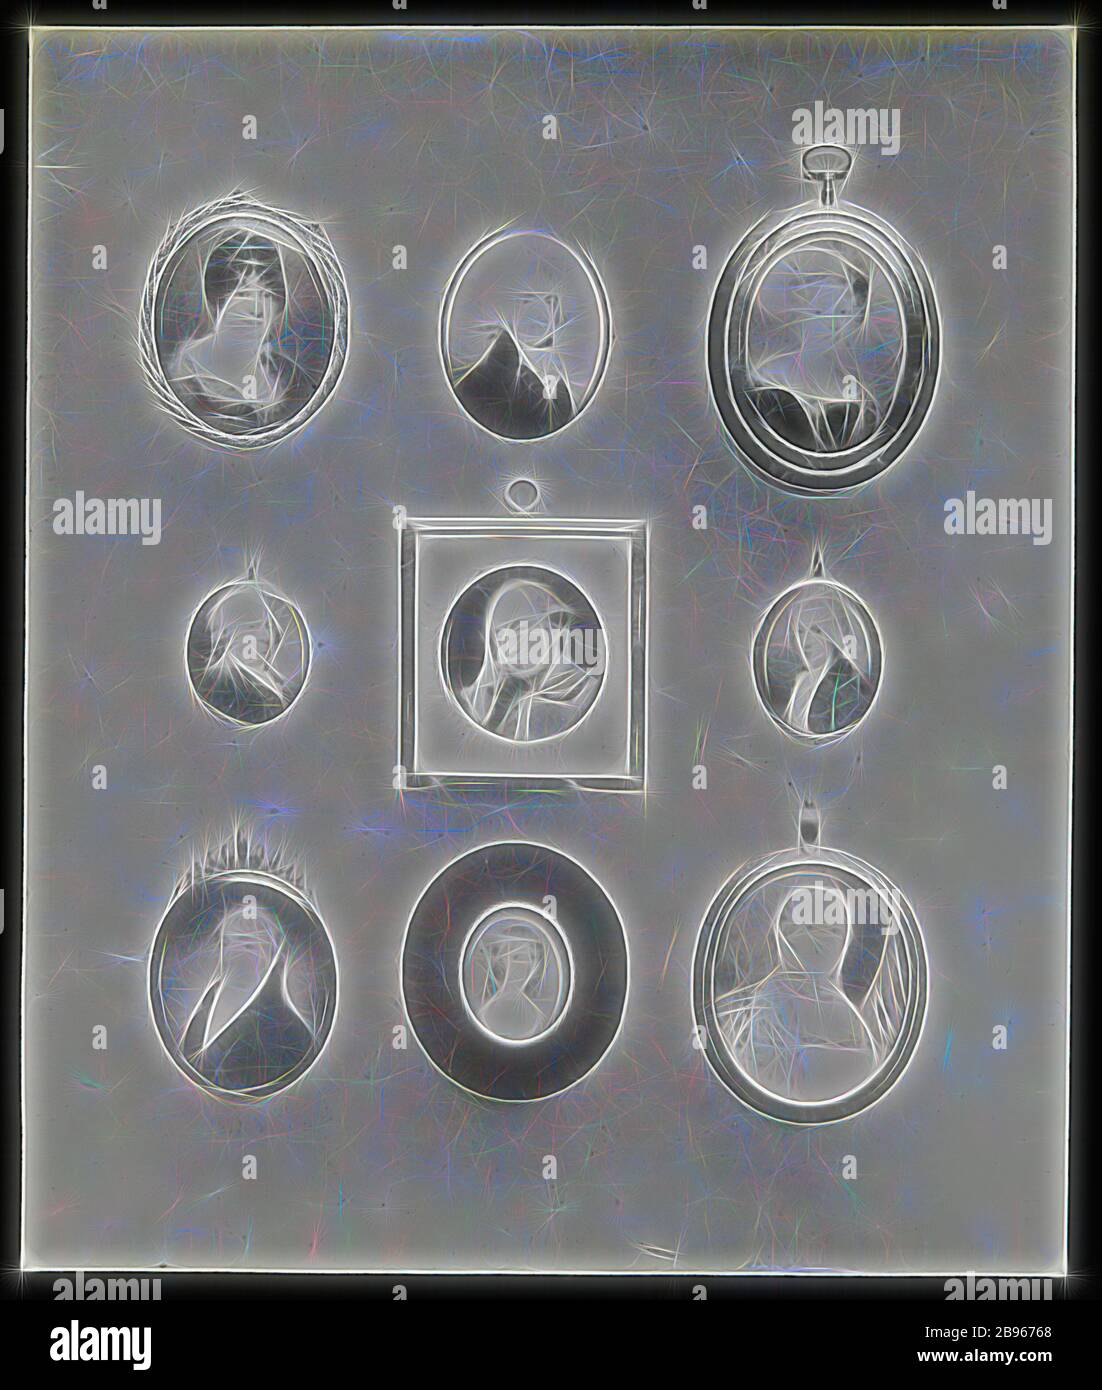 Laternenrutsche - Portrait Miniaturen, 1909-1930, einer von neunzig magischen Laternenschiebebahnen, die Bilder von Artefakten, Kunstwerken, dekorativer Kunst, Innenräumen und Möbeln enthalten, die zu verschiedenen Museums- und Galeriesammlungen im Vereinigten Königreich gehören. Die Francis Collection von vorkinematographischen Apparaturen und Ephemera wurde von den australischen und viktorianischen Regierungen im Jahr 1975 erworben., neu gestaltet von Gibon, Design von warmen fröhlich glühen von Helligkeit und Lichtstrahlen Ausstrahlung. Klassische Kunst neu erfunden mit einem modernen Twist. Fotografie inspiriert von Futurismus, umarmt dynamische Energie der modernen t Stockfoto